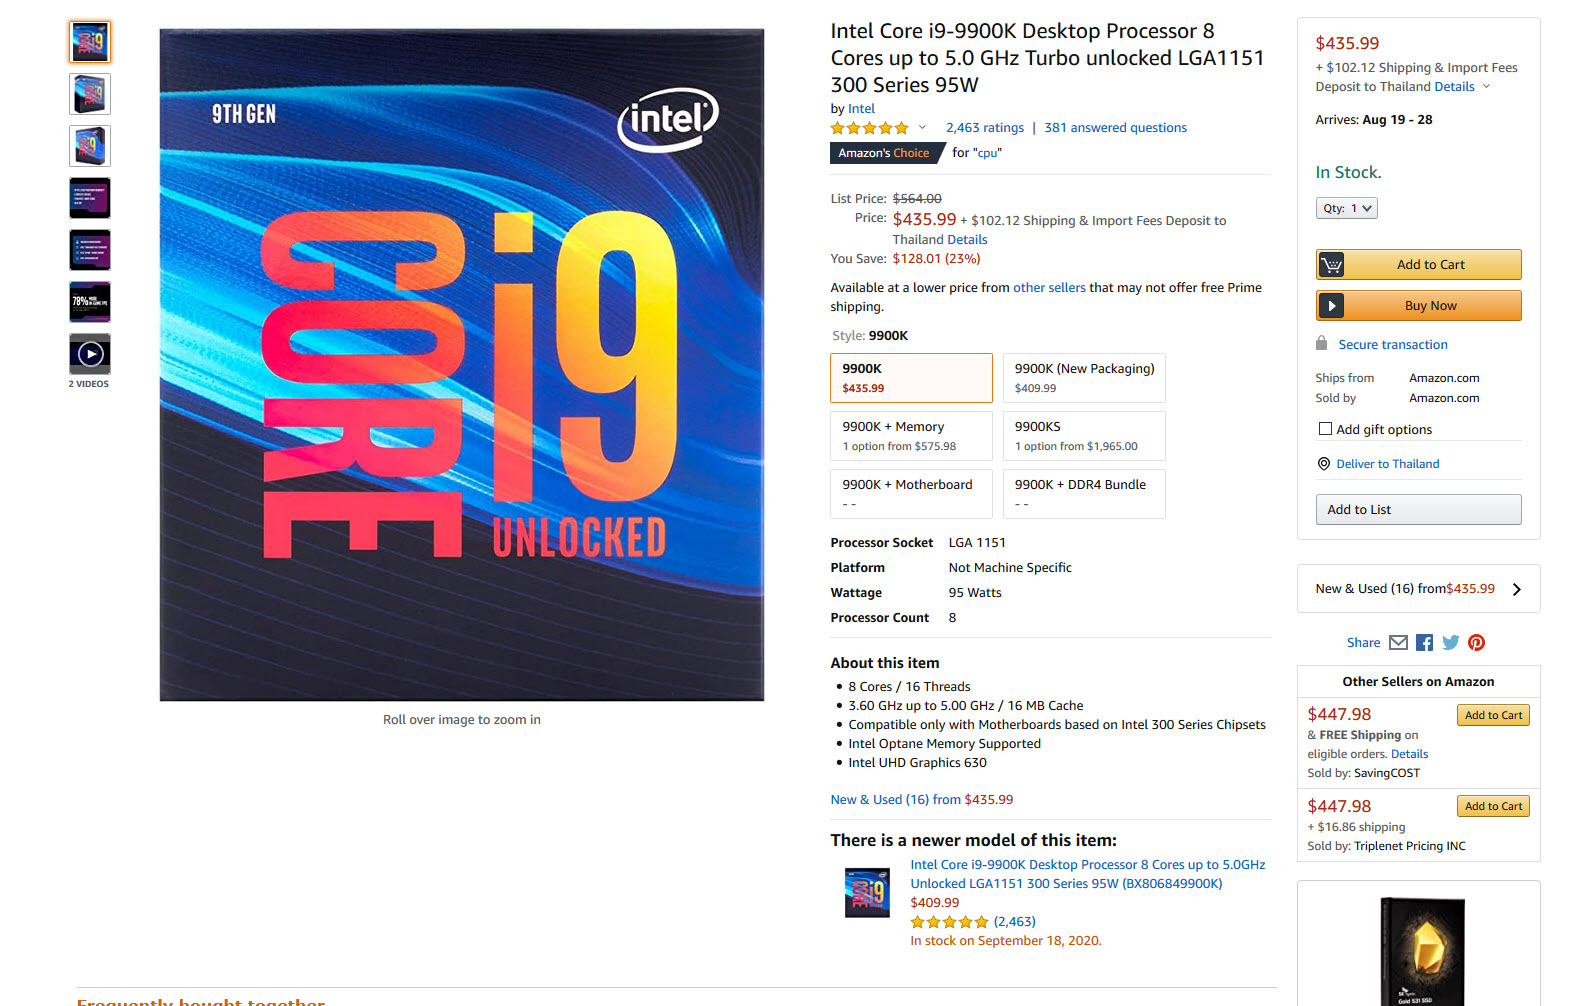 2020 08 12 11 23 14 ซีพียู Intel 9th Gen ลดราคาลง 25% ในเว็บไซต์ออนไลน์ต่างประเทศ